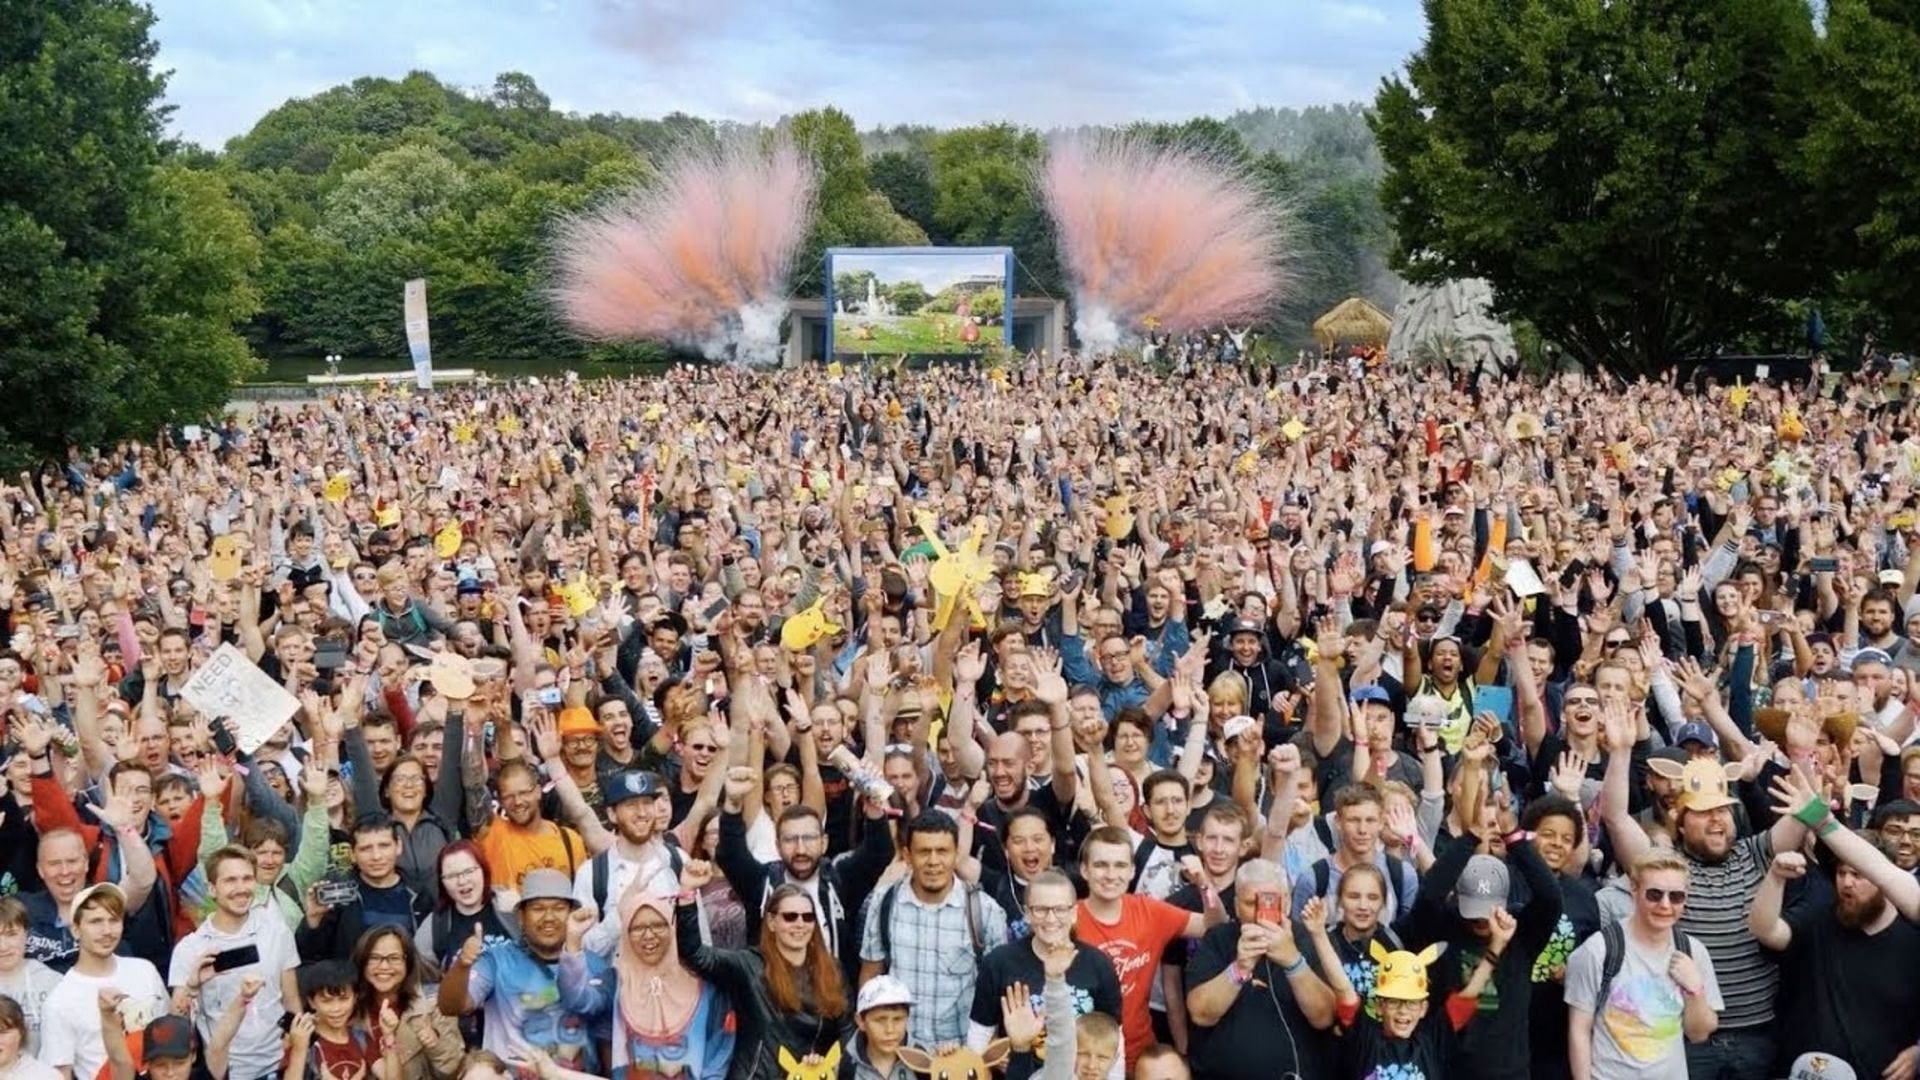 La multitud en el evento European Live anterior organizado por Dortmund, Alemania (Imagen a través de Niantic)